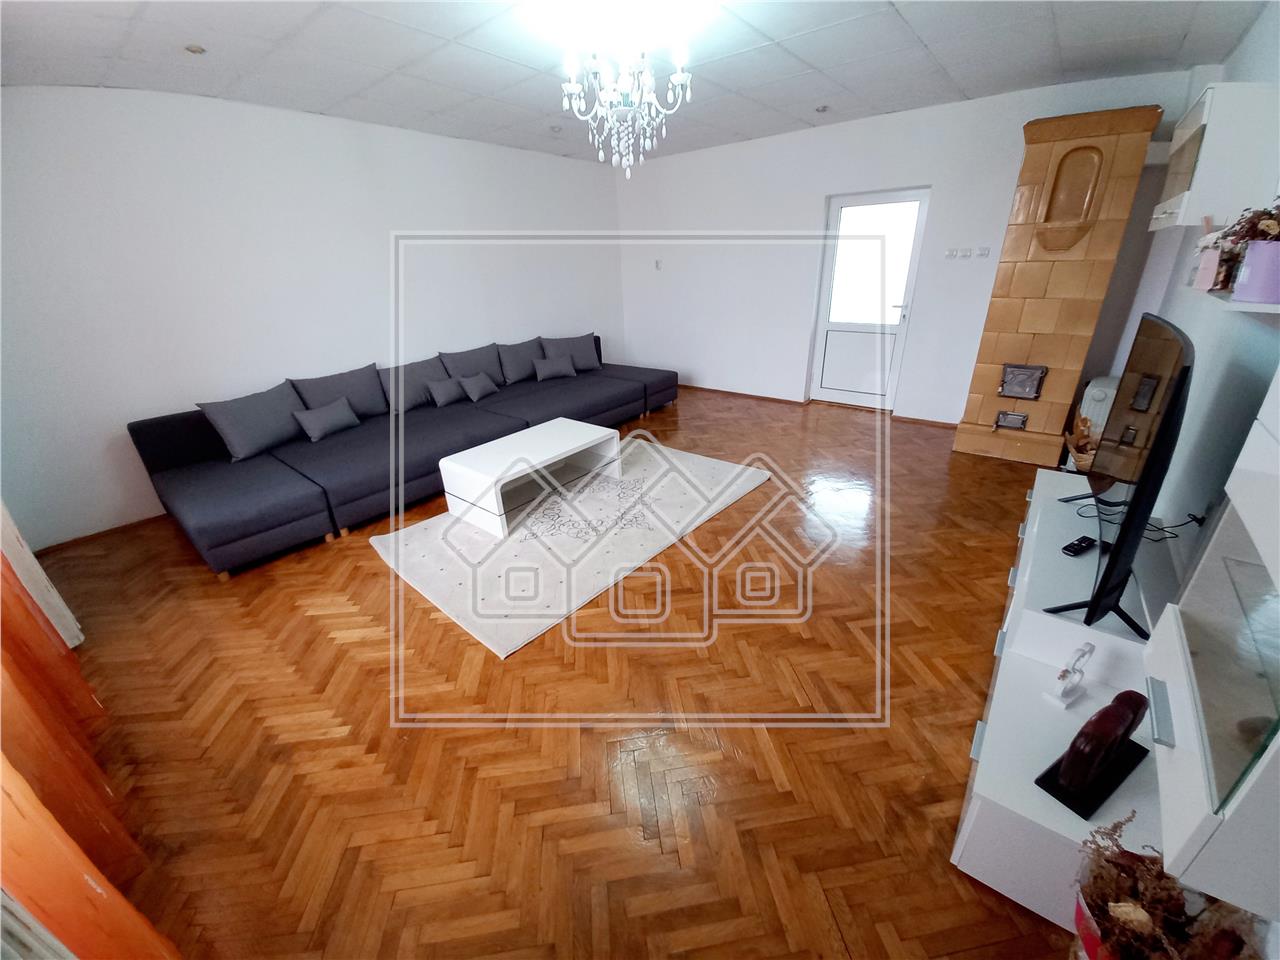 Wohnung zum Verkauf in Alba Iulia - 3 Zimmer - freistehend - 105 qm